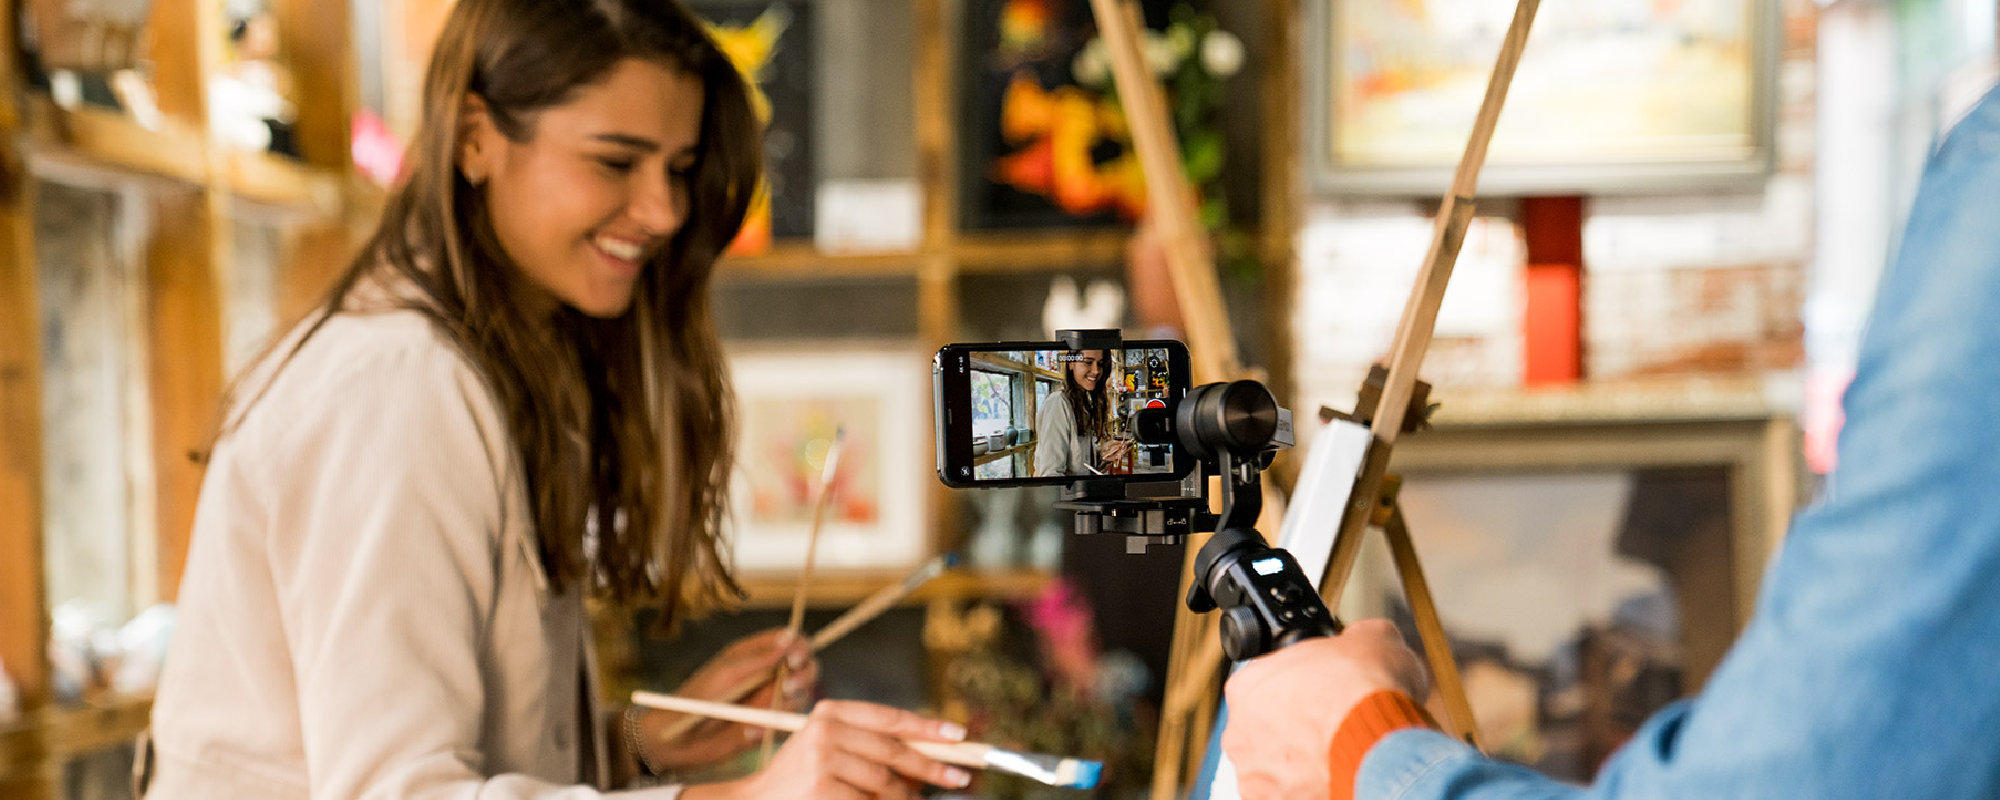 Dziewczyna maluje obraz będąc filmowana smartfonem na gimbalu FeiyuTech G6 Max